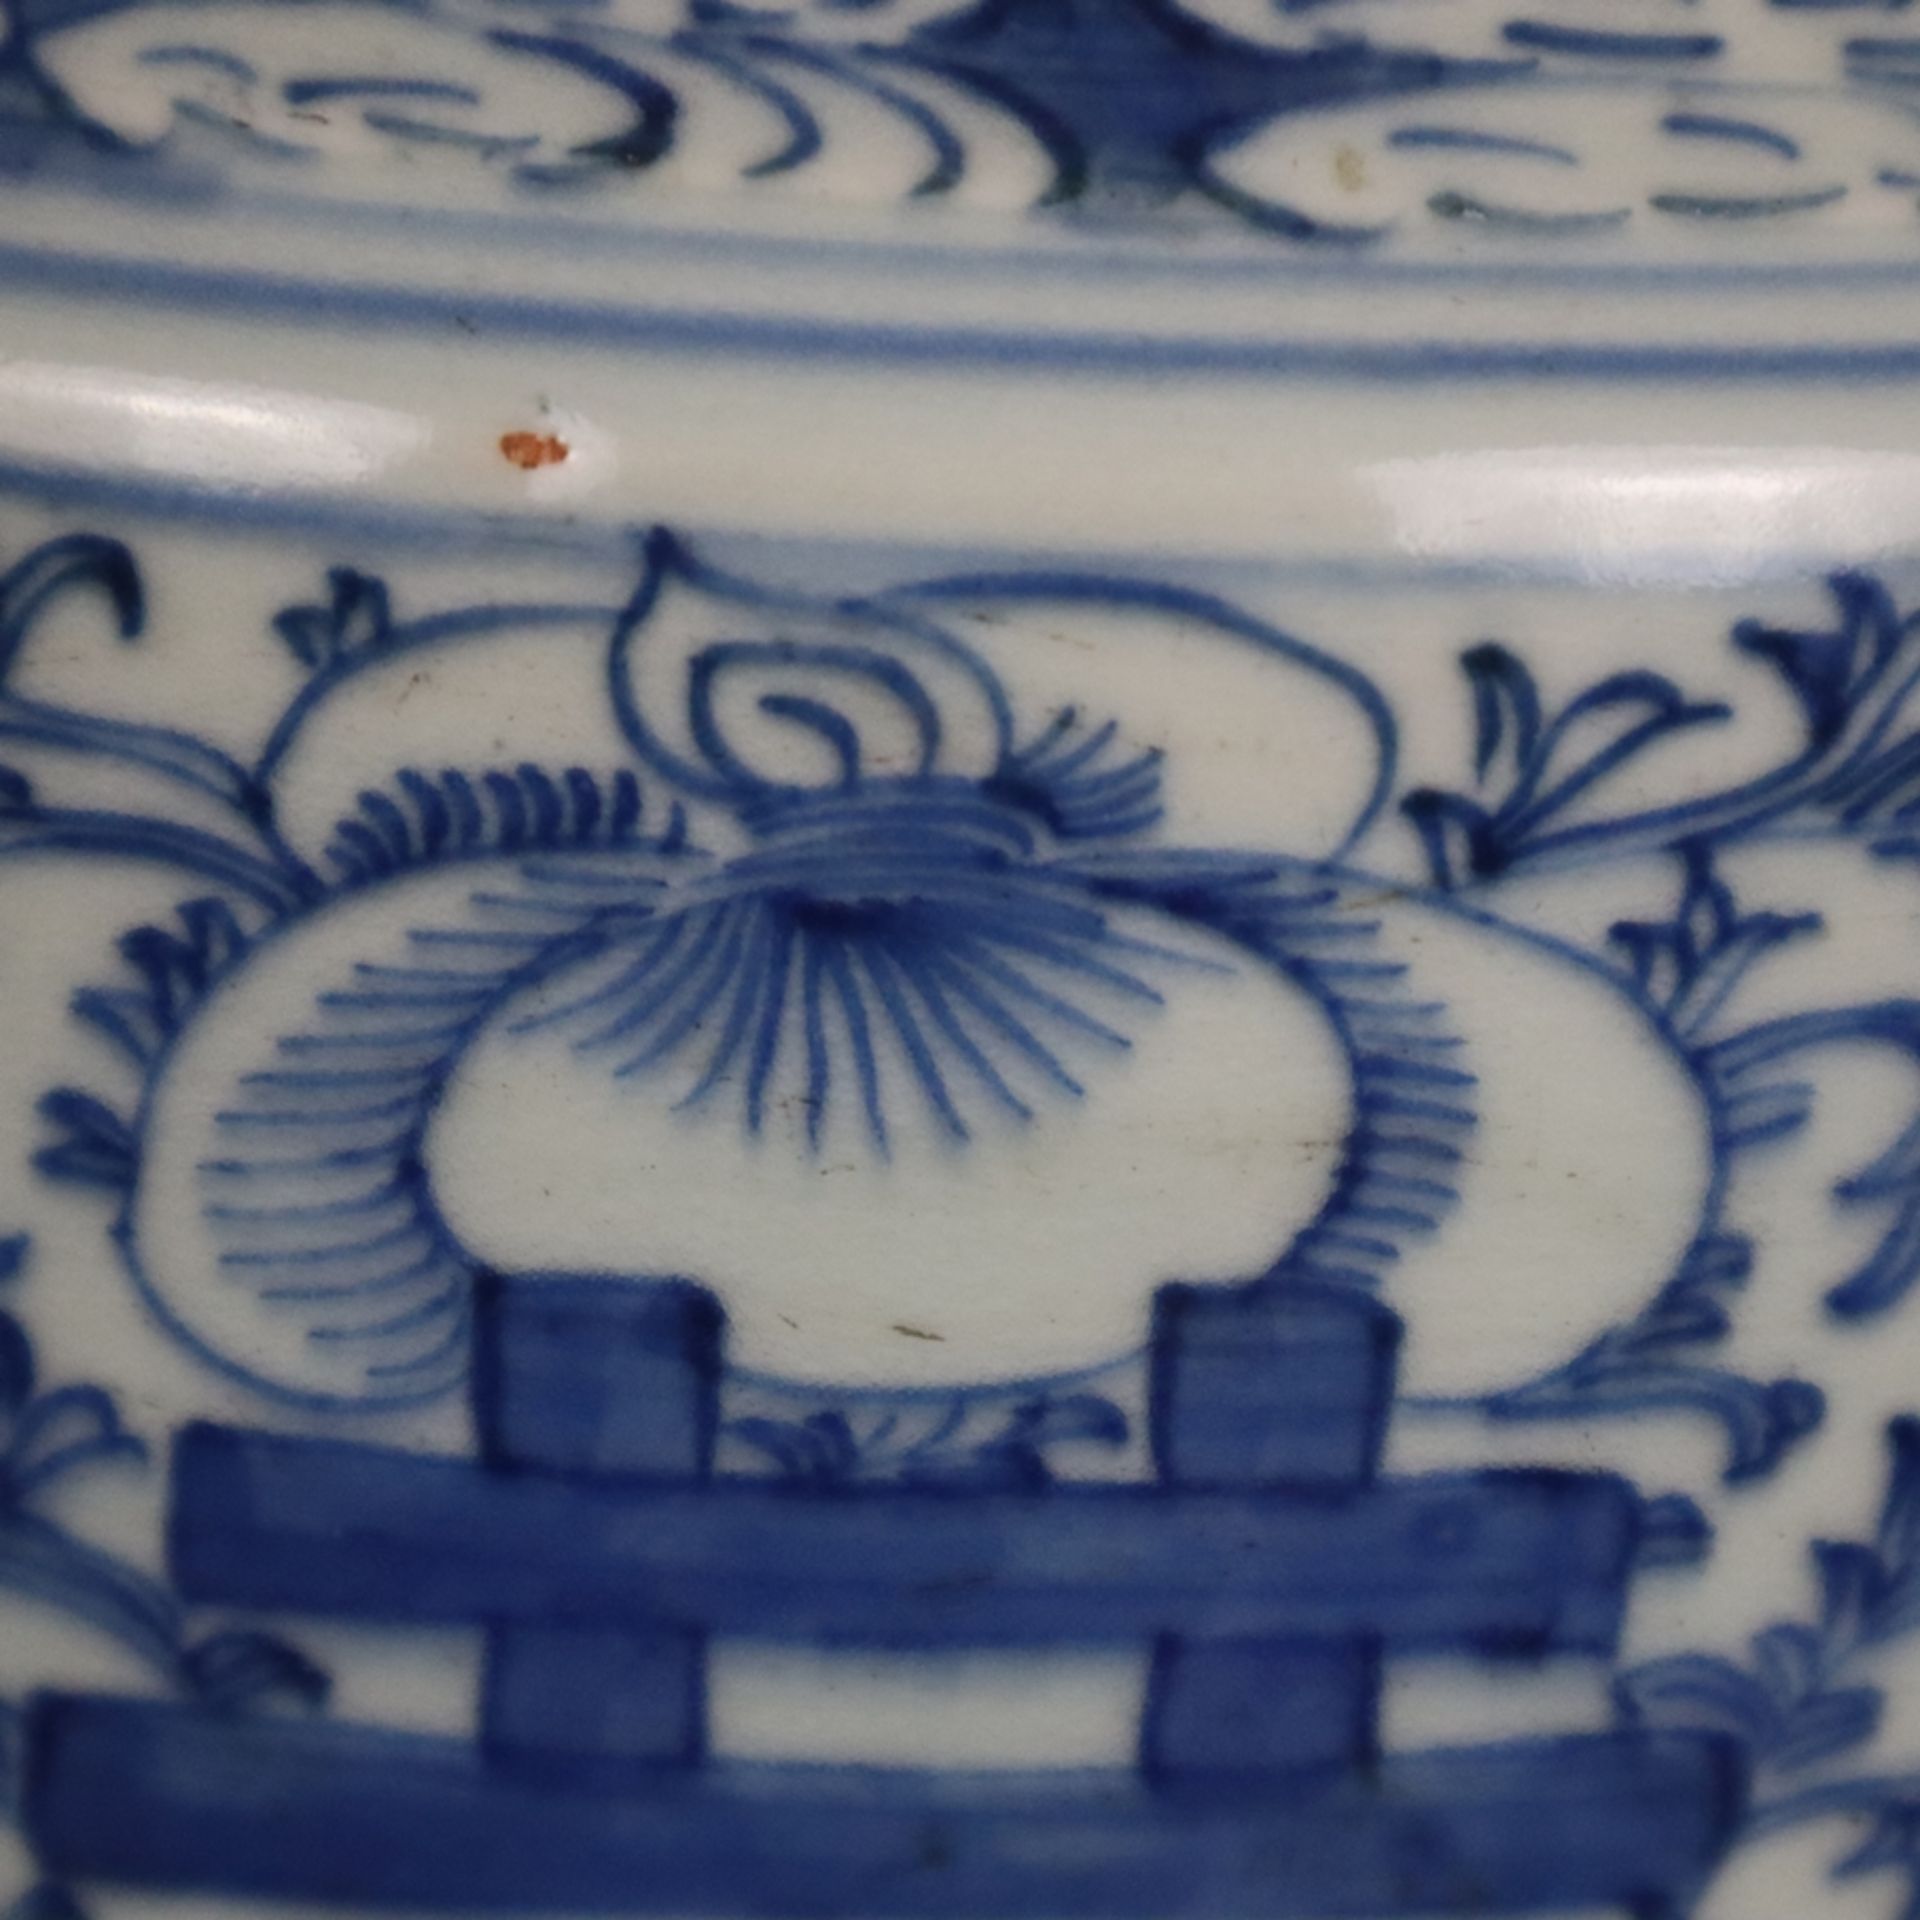 Blau-weiße Bodenvase - China, späte Qing-Dynastie, Tongzhi 1862-1875, sog. „Hochzeitsvase“, auf der - Bild 11 aus 14